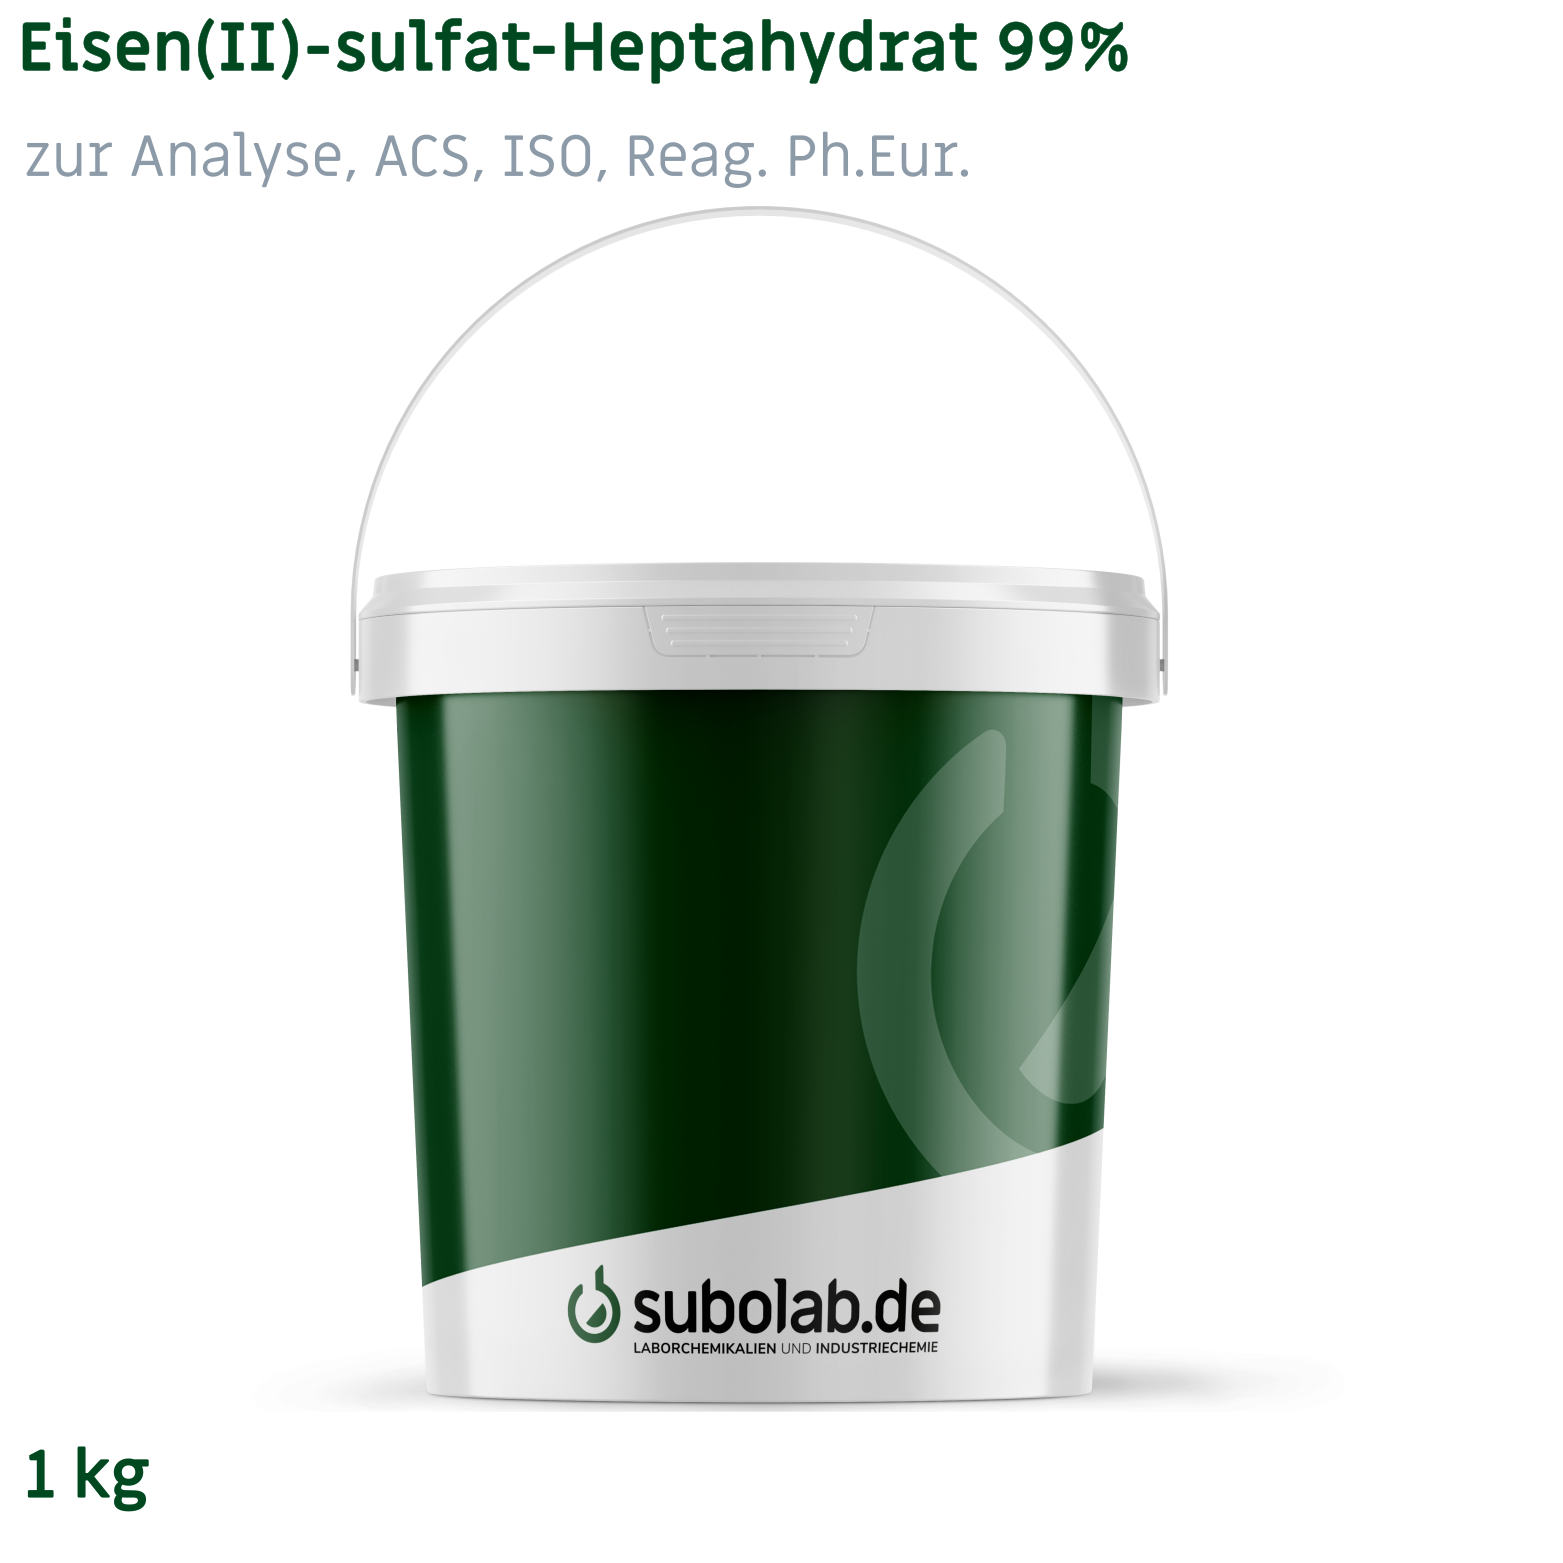 Bild von Eisen(II)-sulfat - Heptahydrat 99% zur Analyse, ACS, ISO, Reag. Ph.Eur. (1 kg)